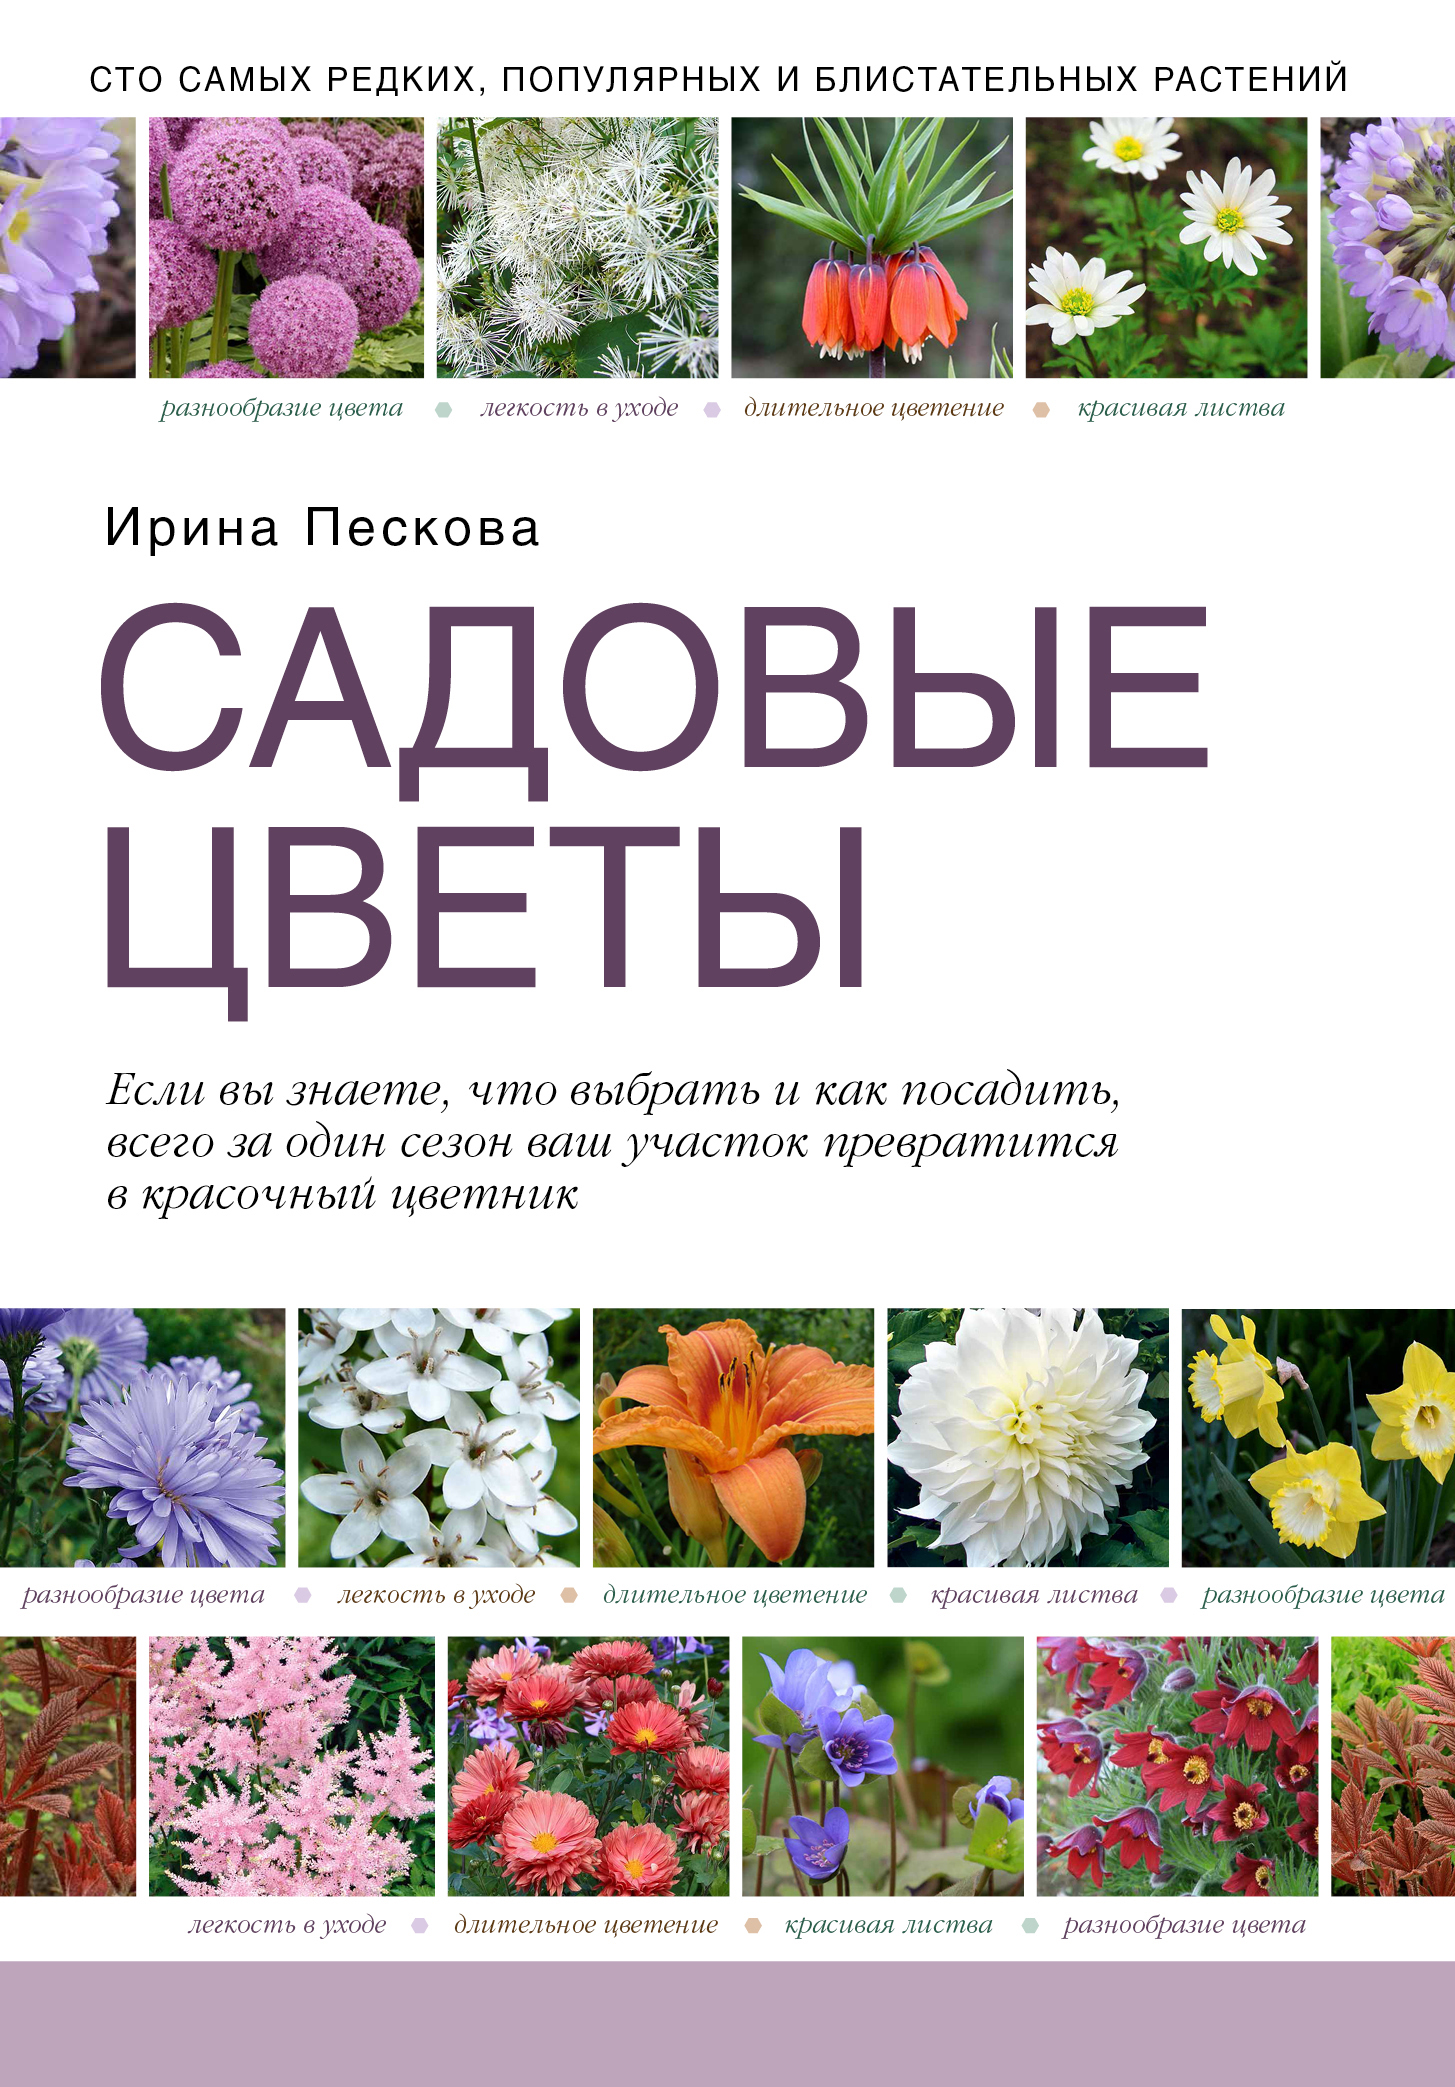 название садовых цветов с фотографиями по алфавиту